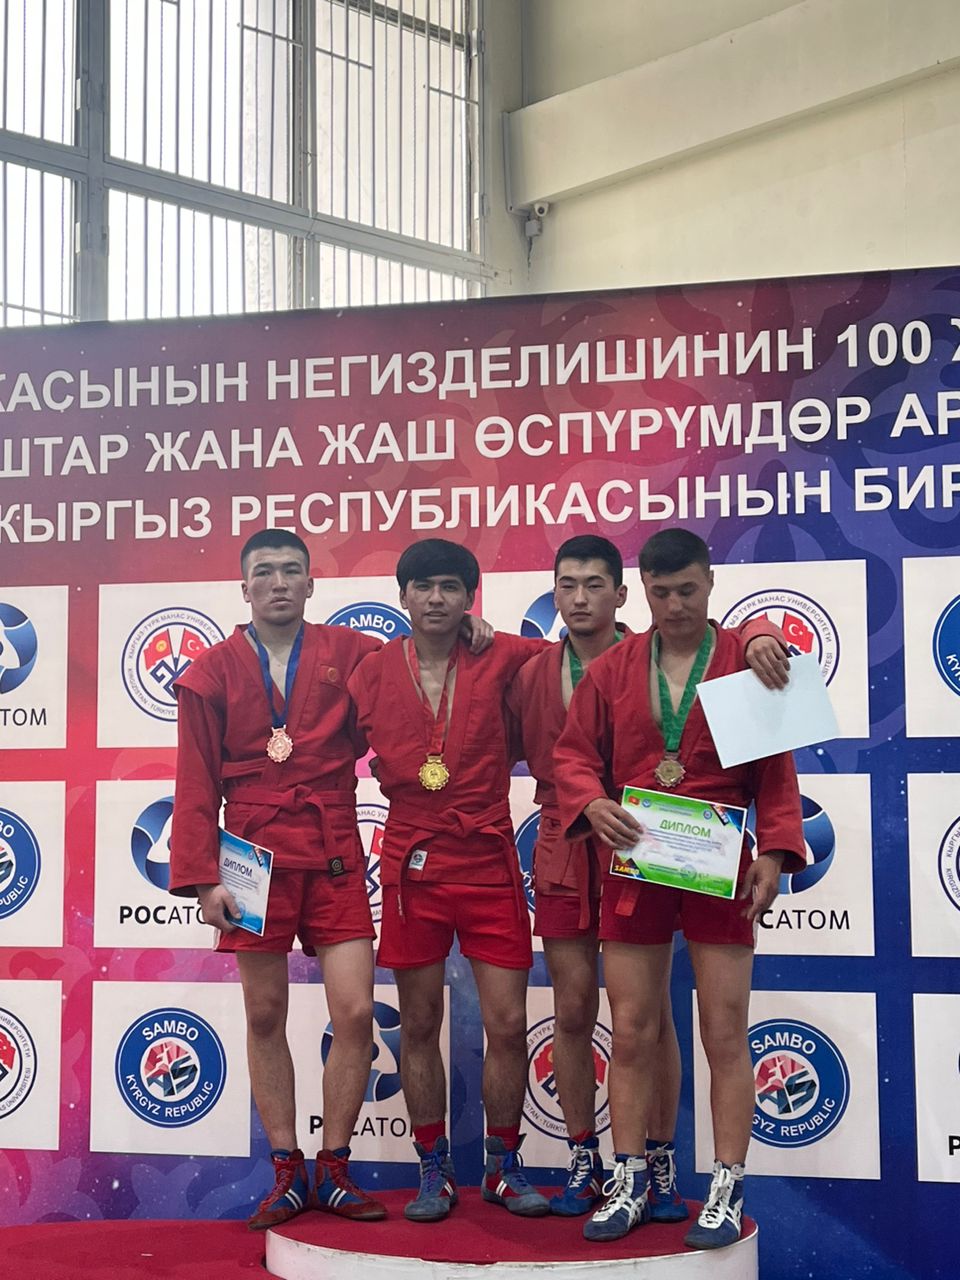 В Первенстве молодежи Кыргызской Республики наш студент Абдылдаев Увайс занял 1-е место по самбо